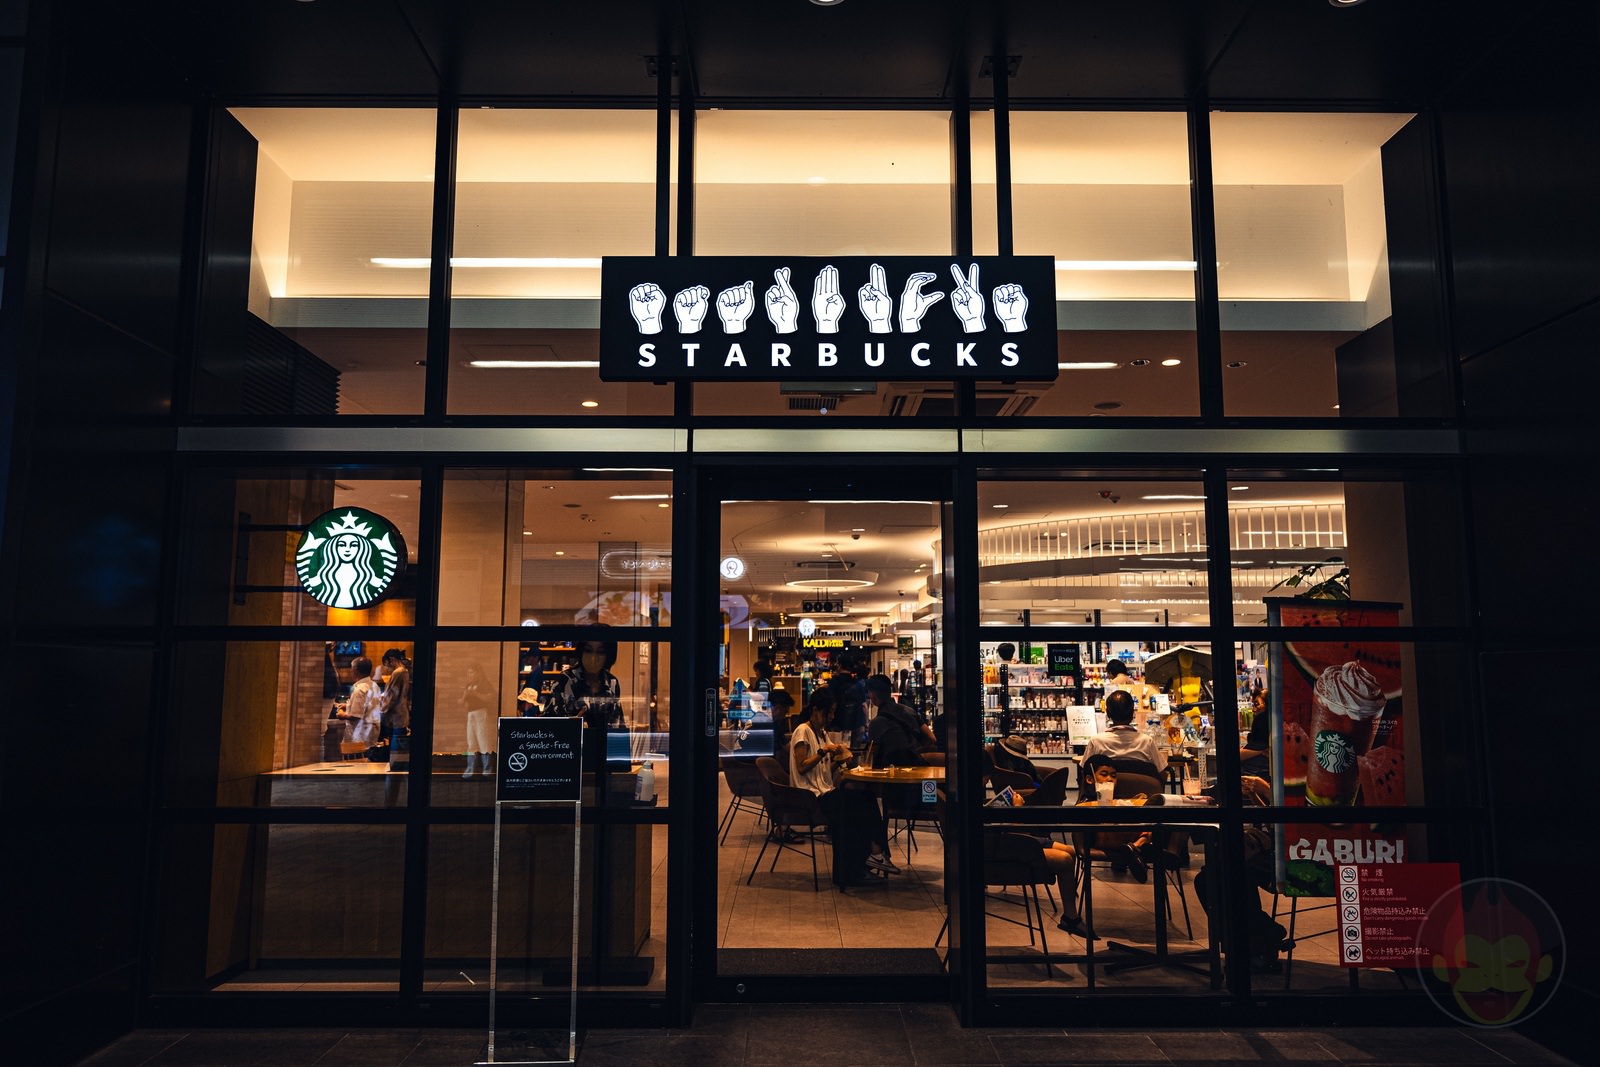 Sign Language Starbucks in japan 02